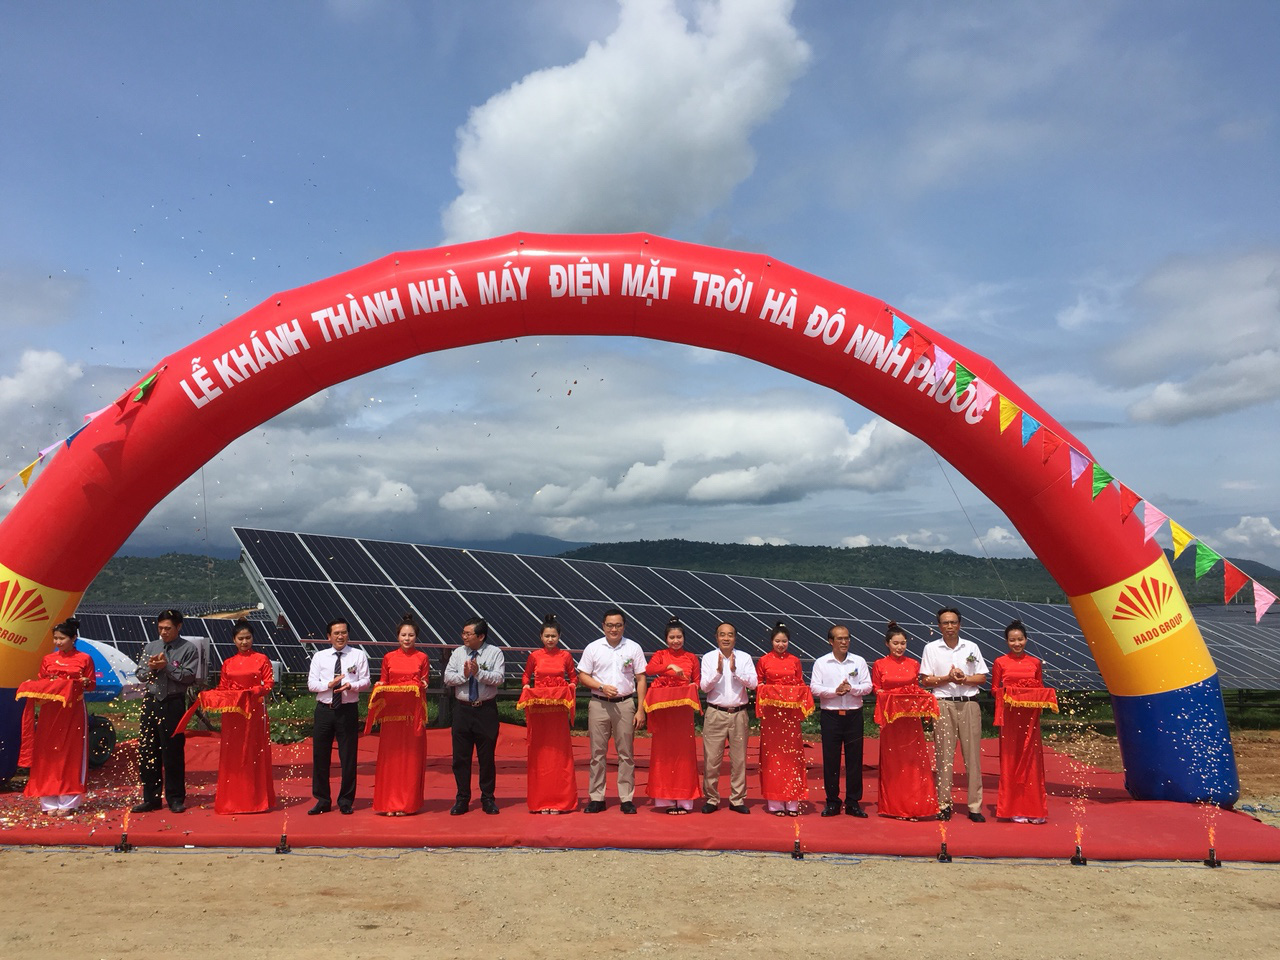 Khánh thành nhà máy điện mặt trời Hà Đô Ninh Phước với công suất 50 MWp  - Ảnh 2.